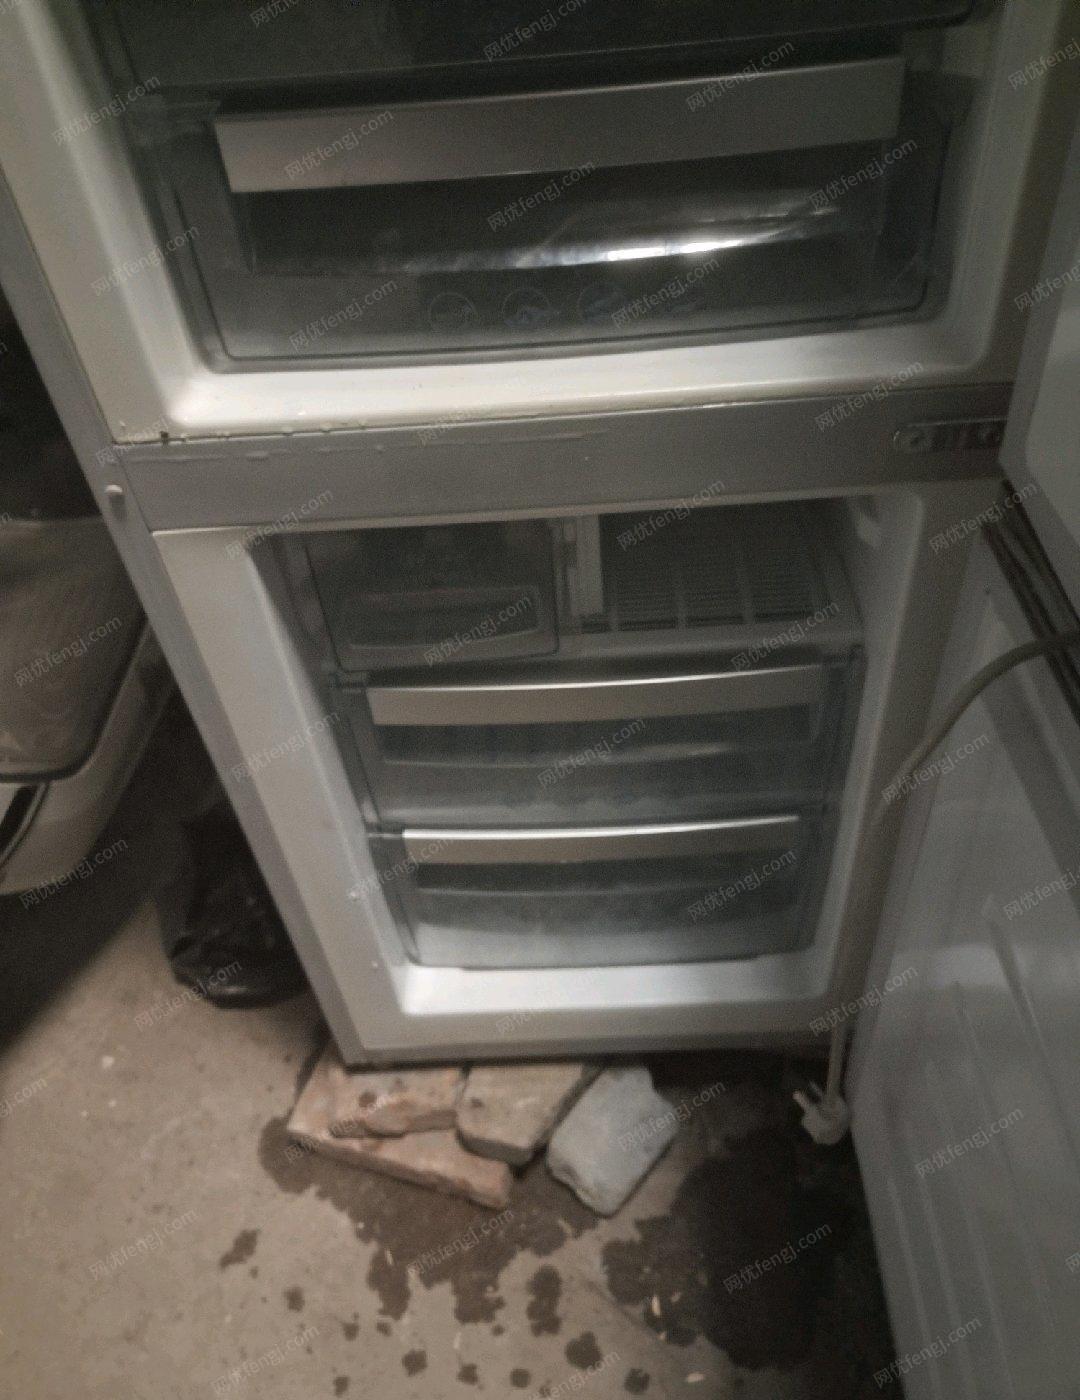 山东济南出售三门家用冰箱